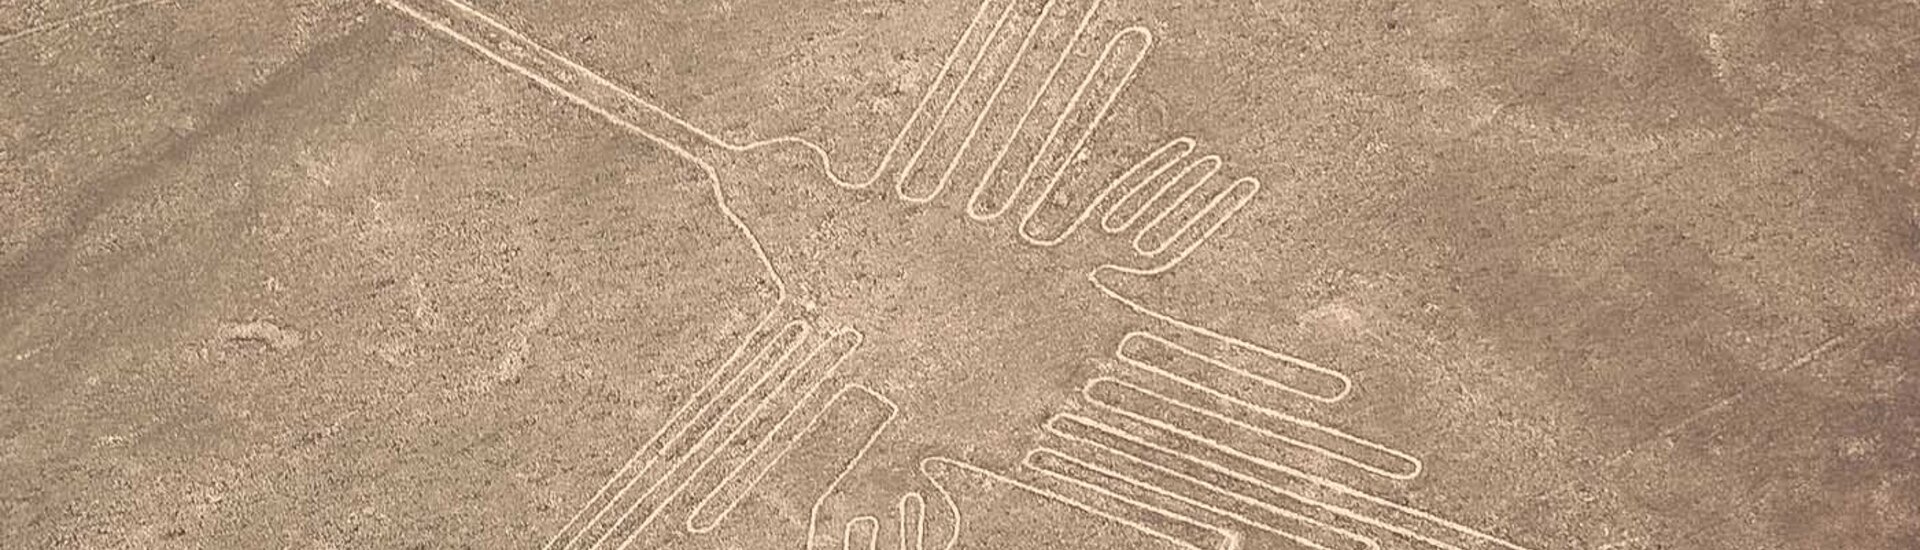 Nazca-Linien in Peru